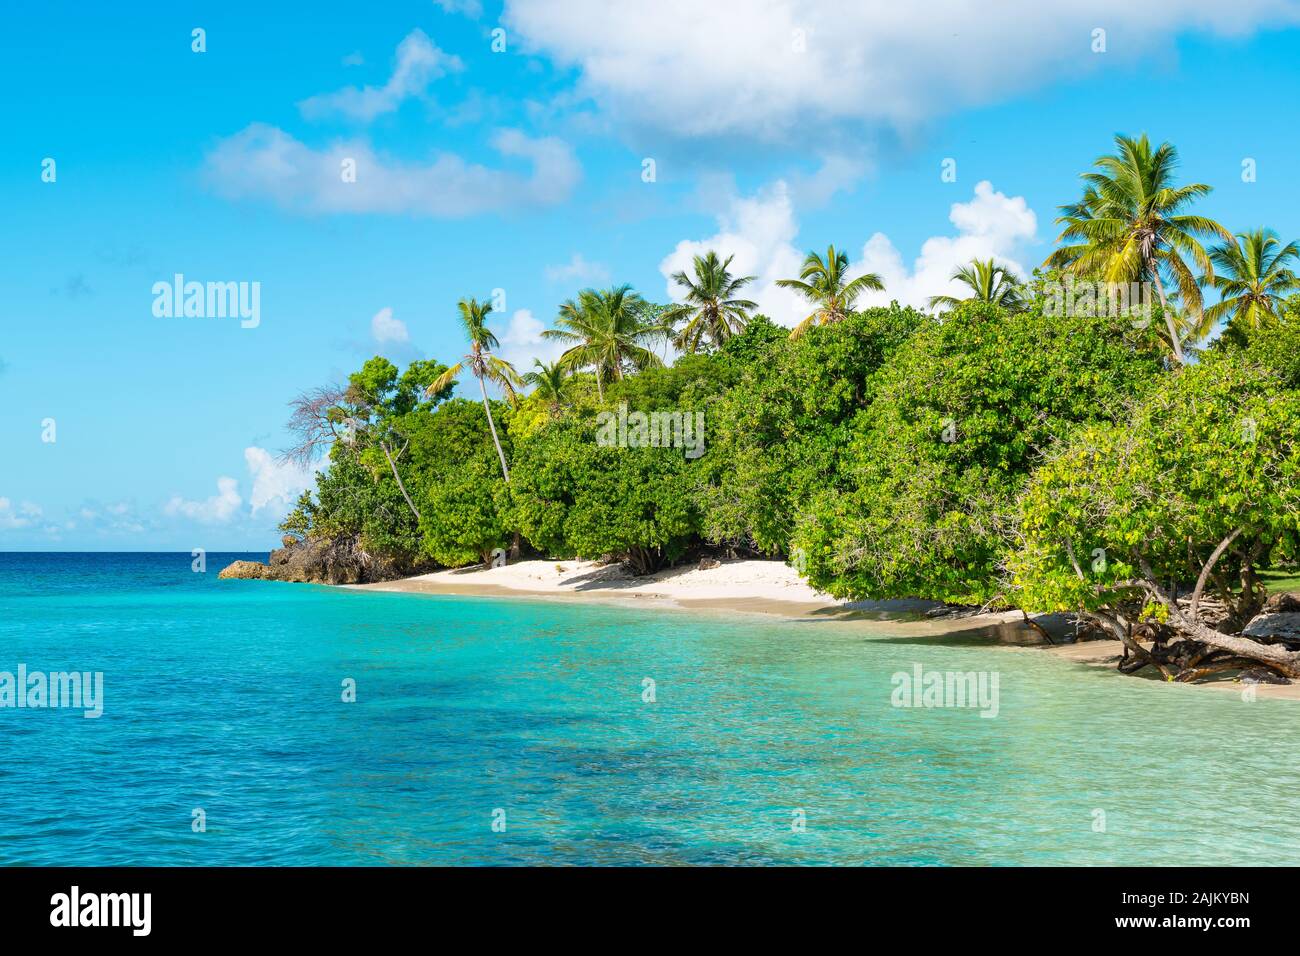 L'île de Cayo Levantado, Samana, République dominicaine. Palmier plage idyllique et paysage. Banque D'Images